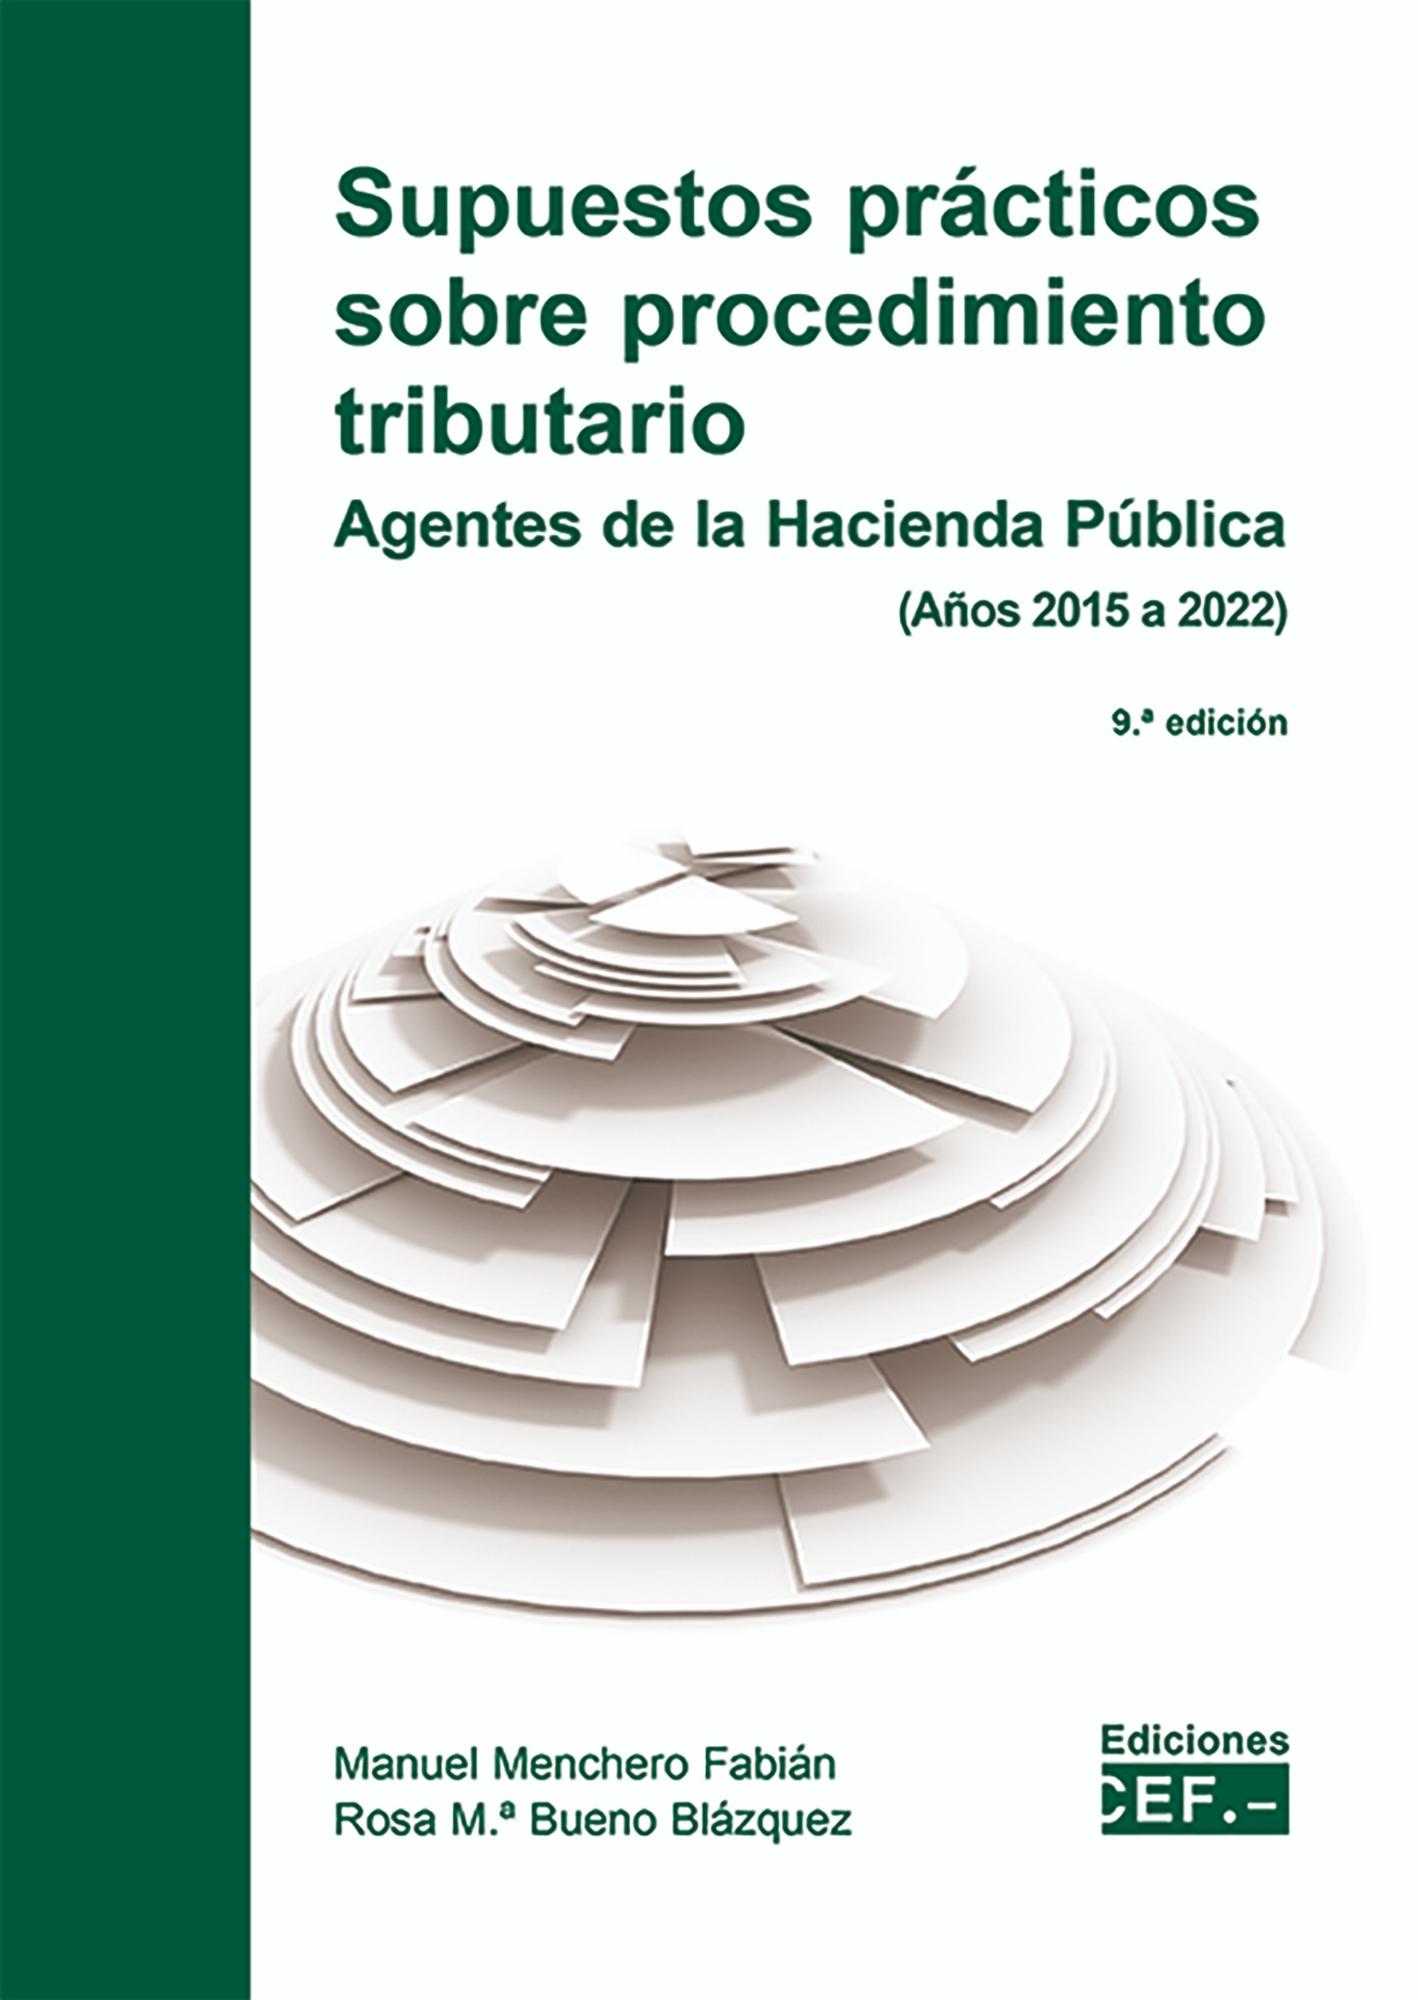 Supuestos prácticos sobre procedimiento tributario "Agentes de Hacienda Pública (Años 2015 a 2022)"